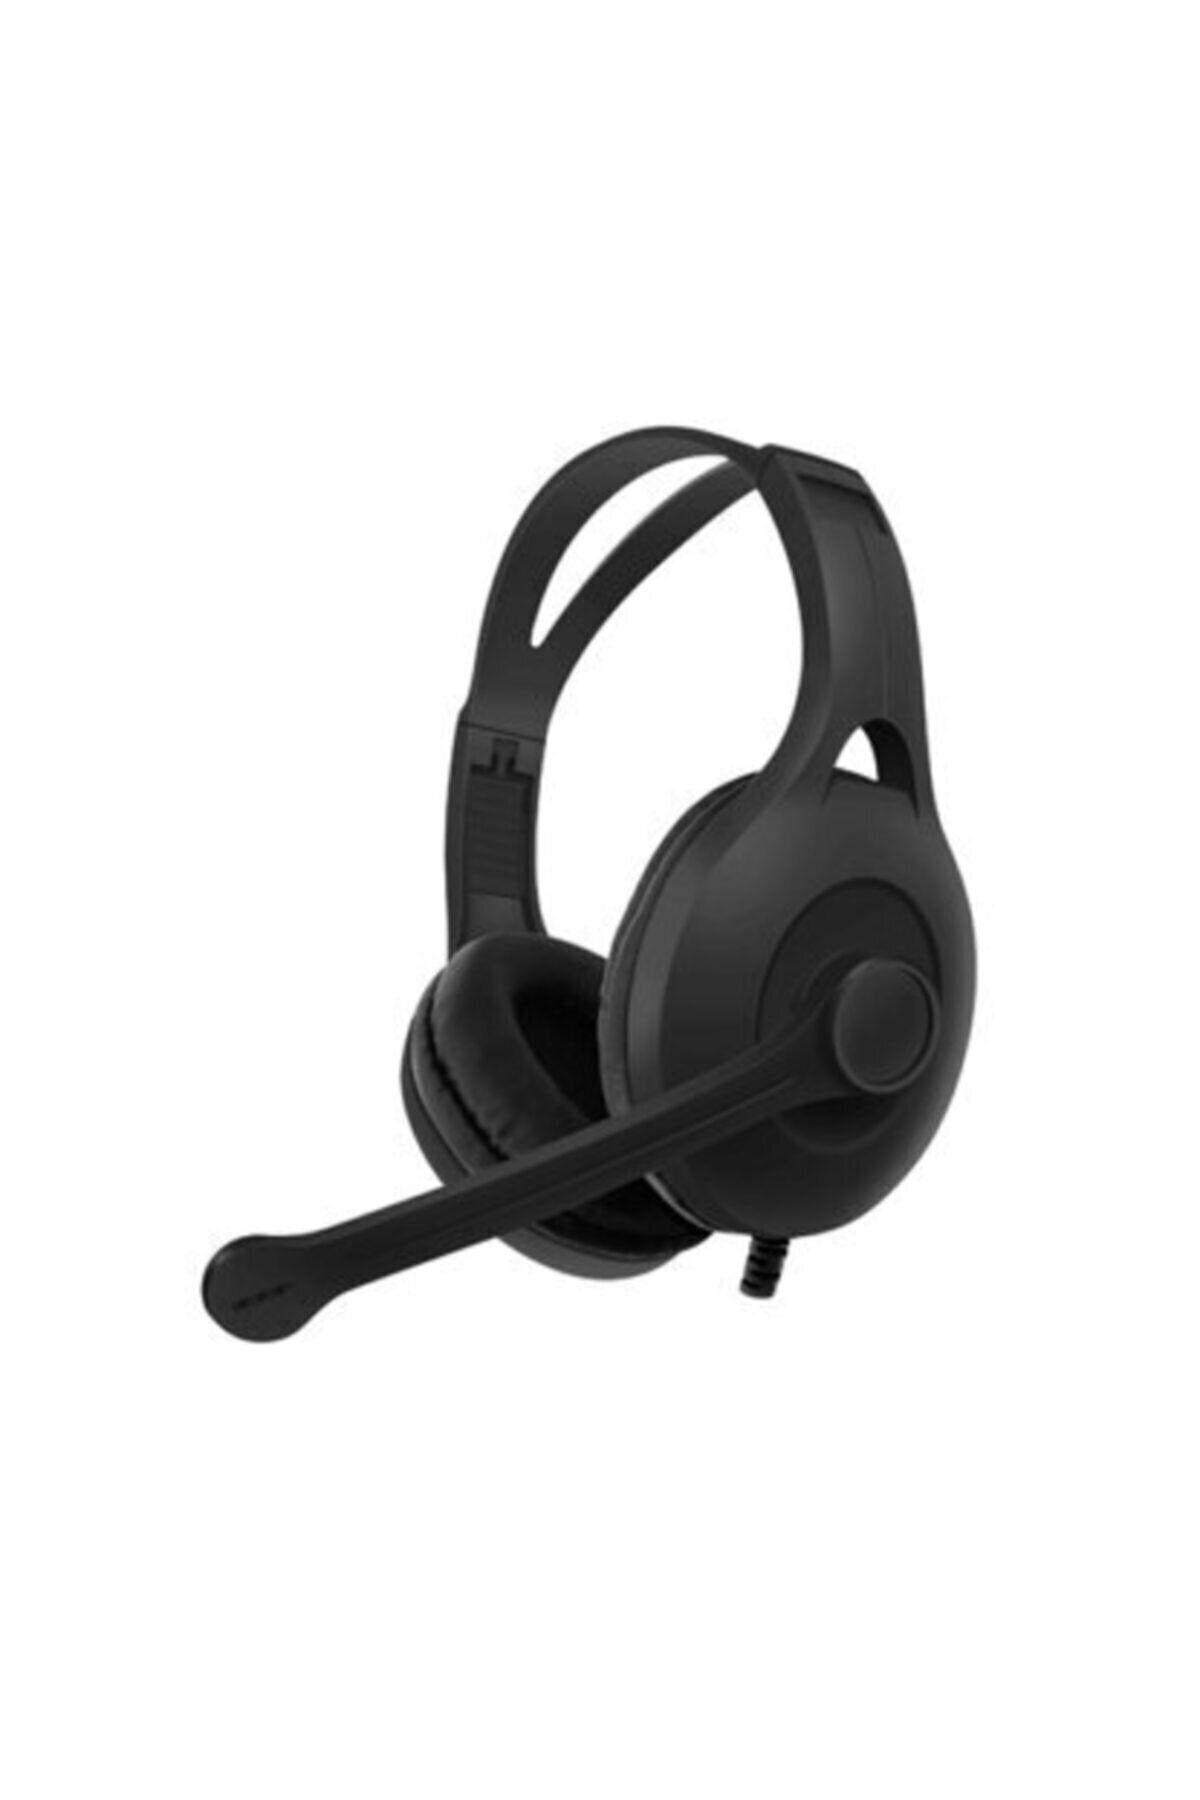 Karler Bass Kablolu Oyuncu Kulaklık Kafa Bantlı Kulaküstü Mikrofonlu Gaming Kulaklık Cep Telefonu&tablet Uyumlu